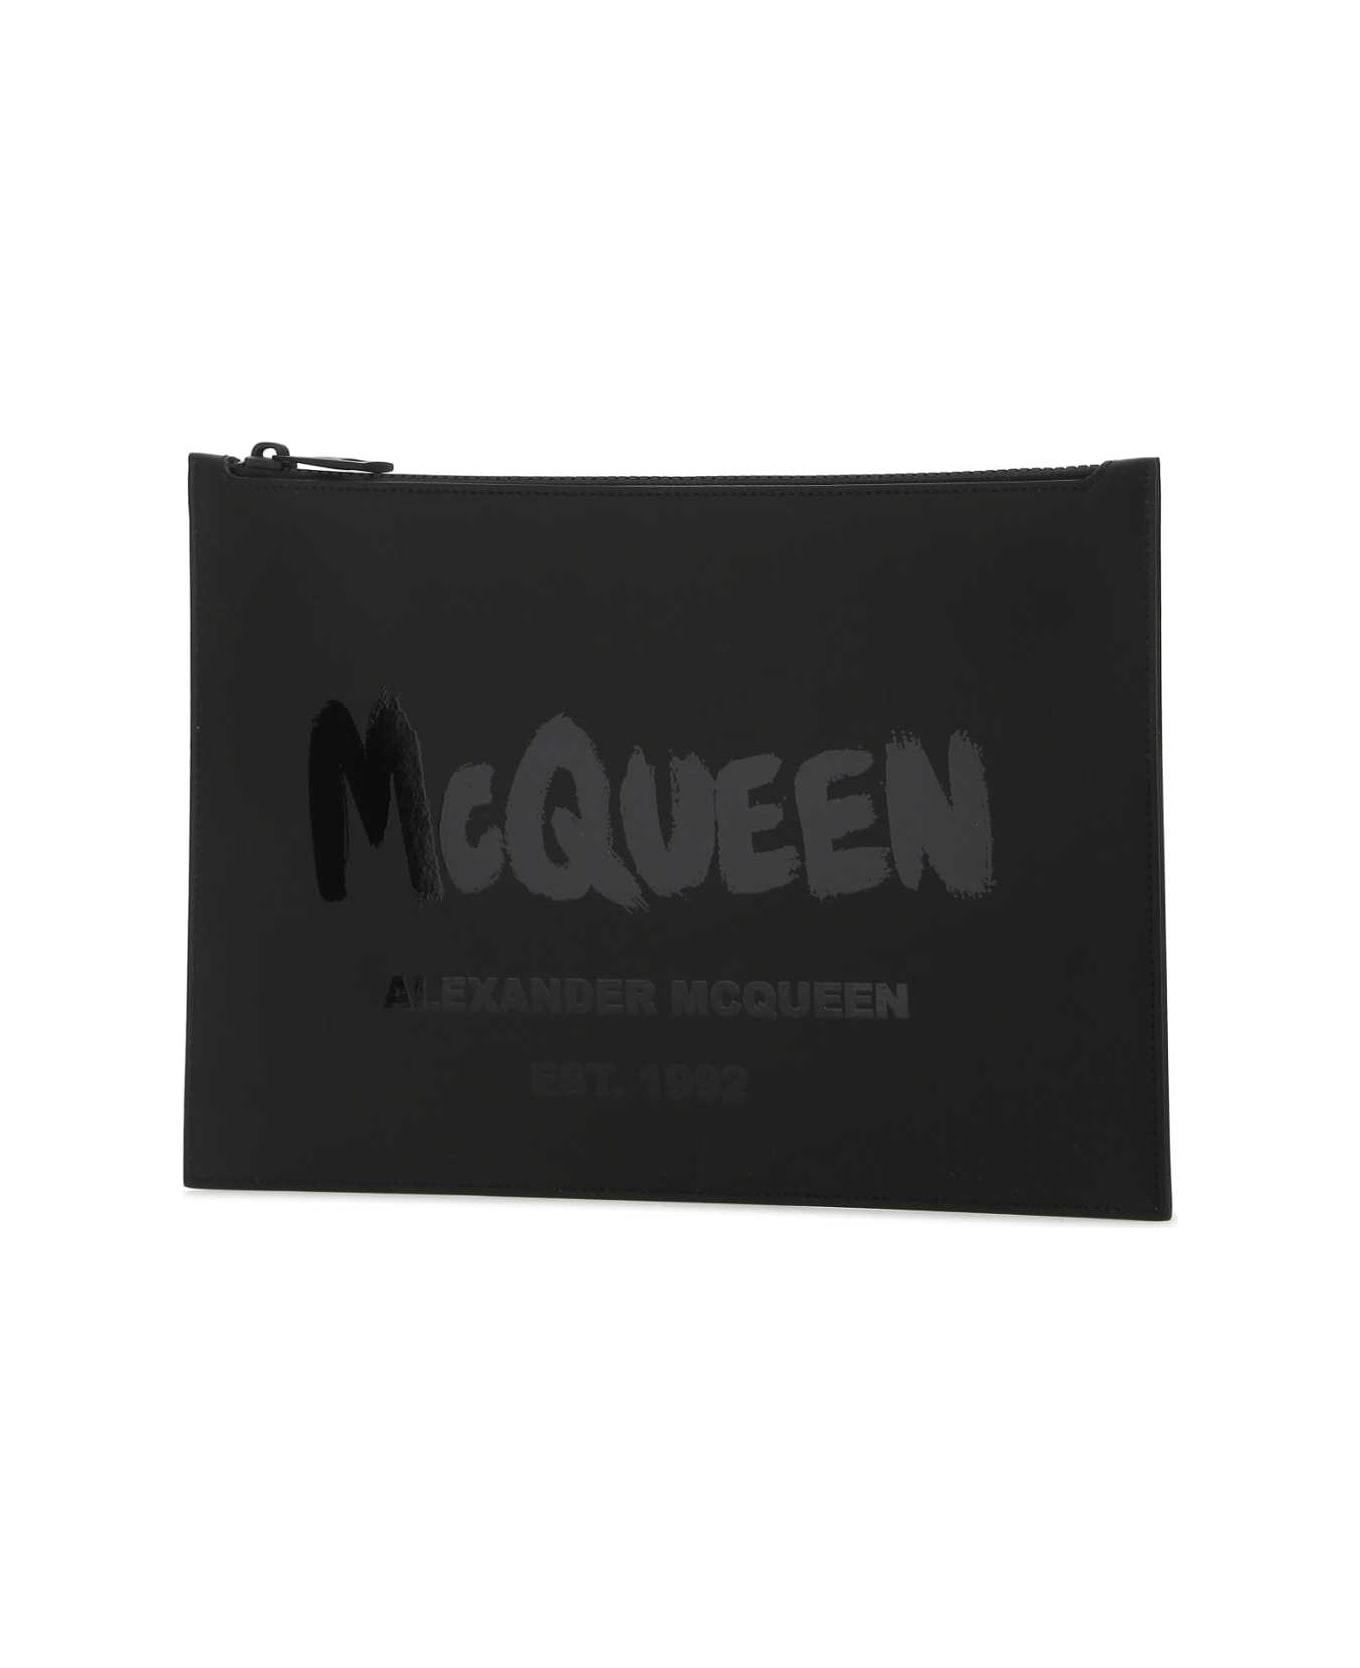 Alexander McQueen Black Leather Clutch - 1000 バッグ